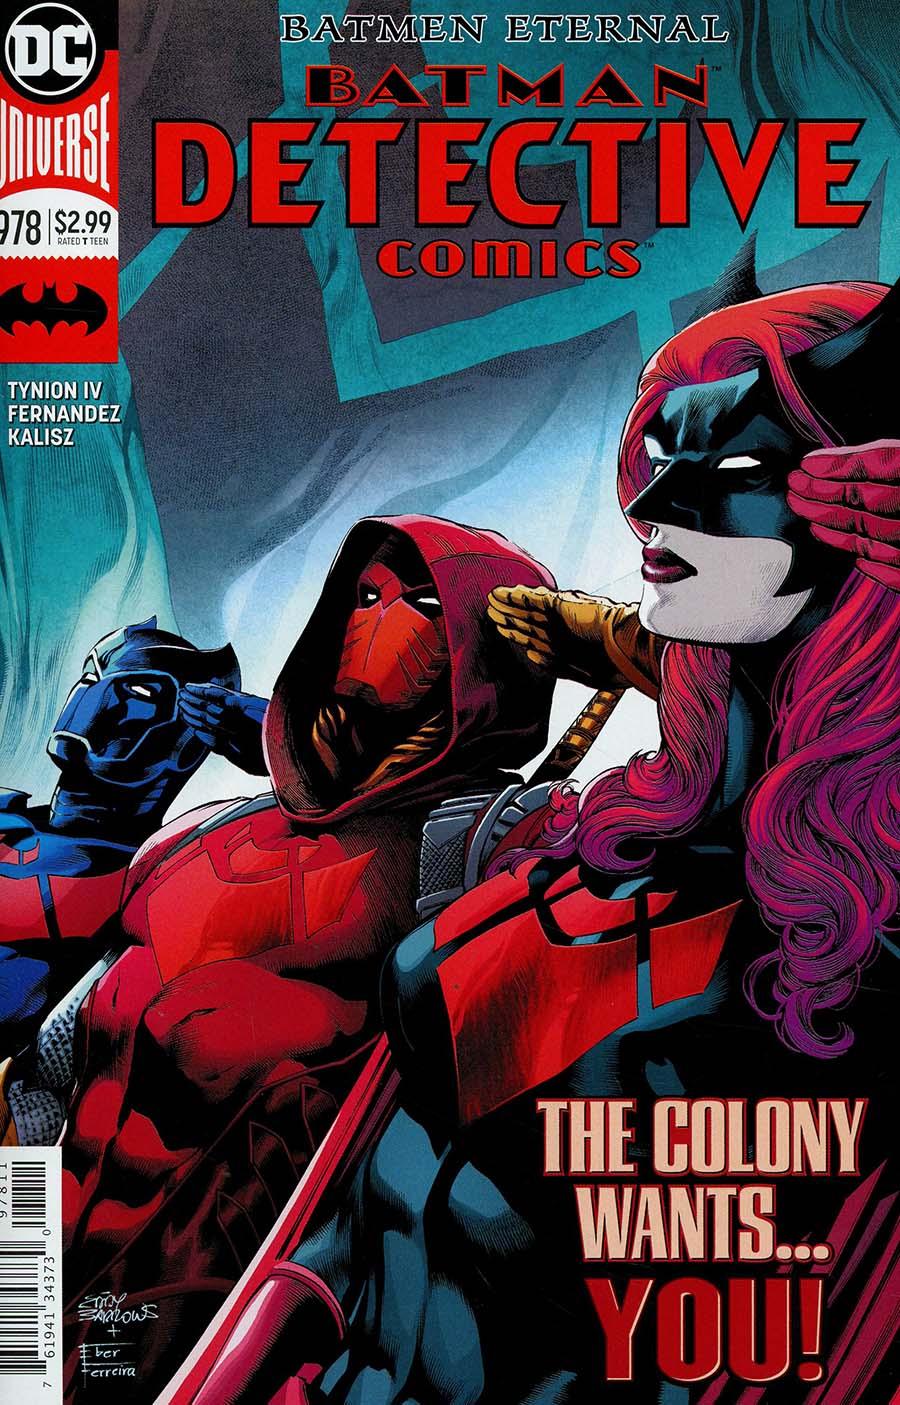 Detective Comics Vol. 2 #978